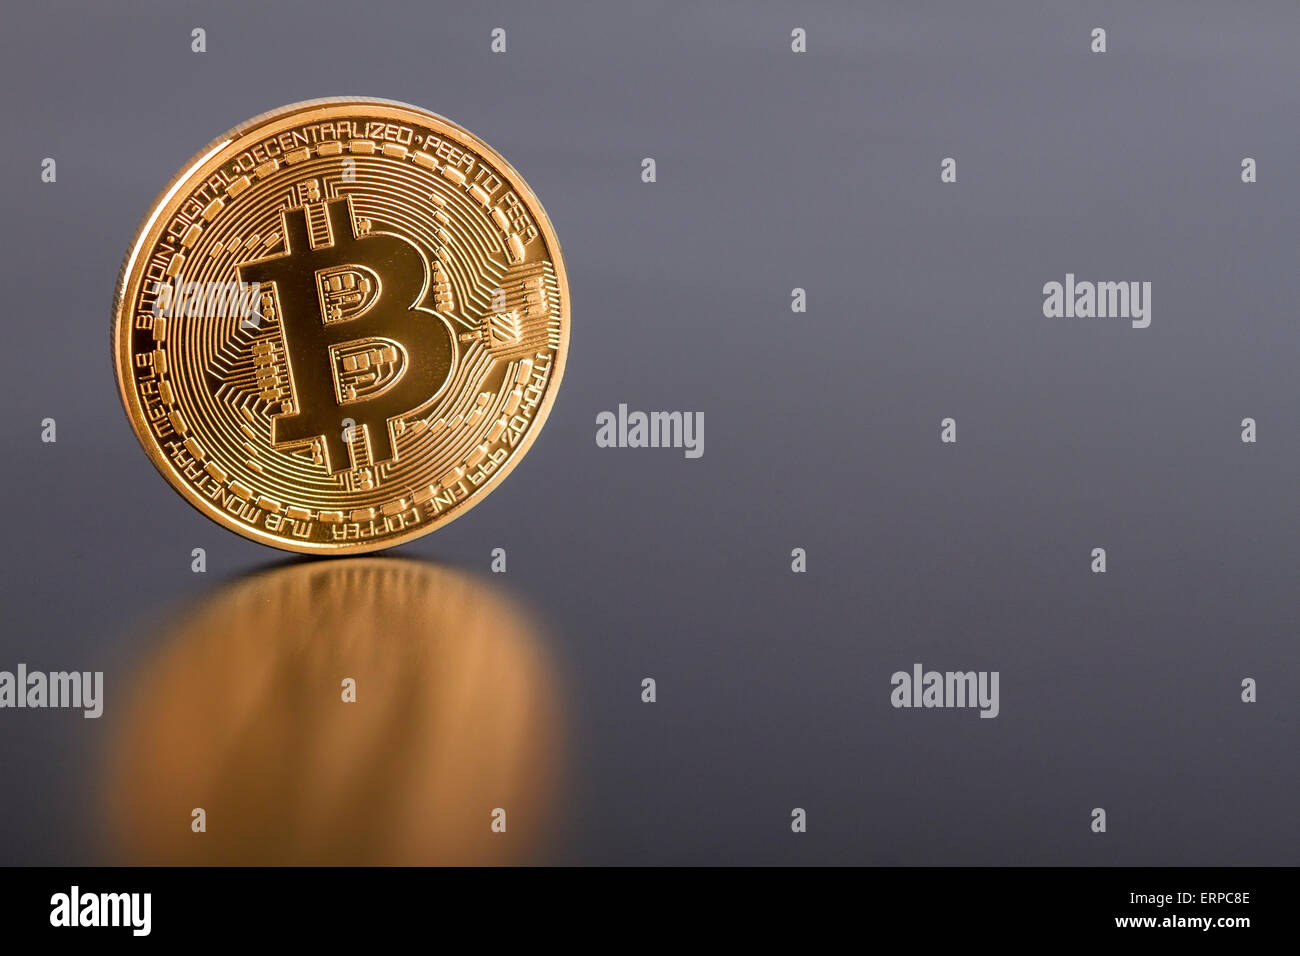 Foto de estudio de la moneda virtual Bitcoin dorados sobre fondo gris. Cerca de la parte frontal. Foto de stock